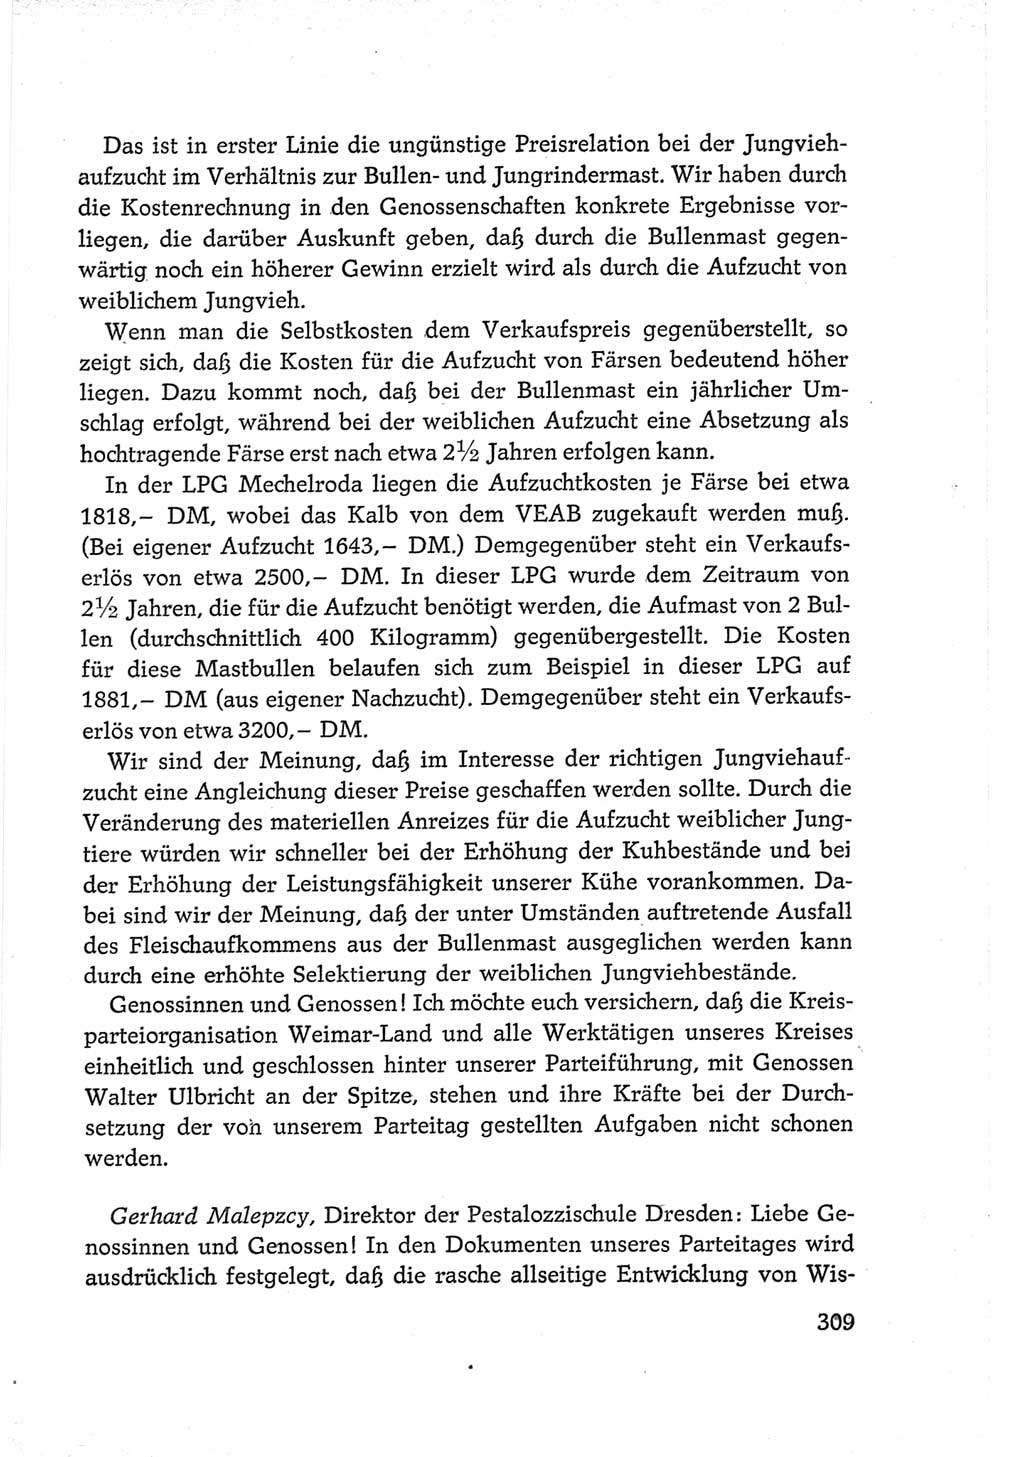 Protokoll der Verhandlungen des Ⅵ. Parteitages der Sozialistischen Einheitspartei Deutschlands (SED) [Deutsche Demokratische Republik (DDR)] 1963, Band Ⅲ, Seite 309 (Prot. Verh. Ⅵ. PT SED DDR 1963, Bd. Ⅲ, S. 309)